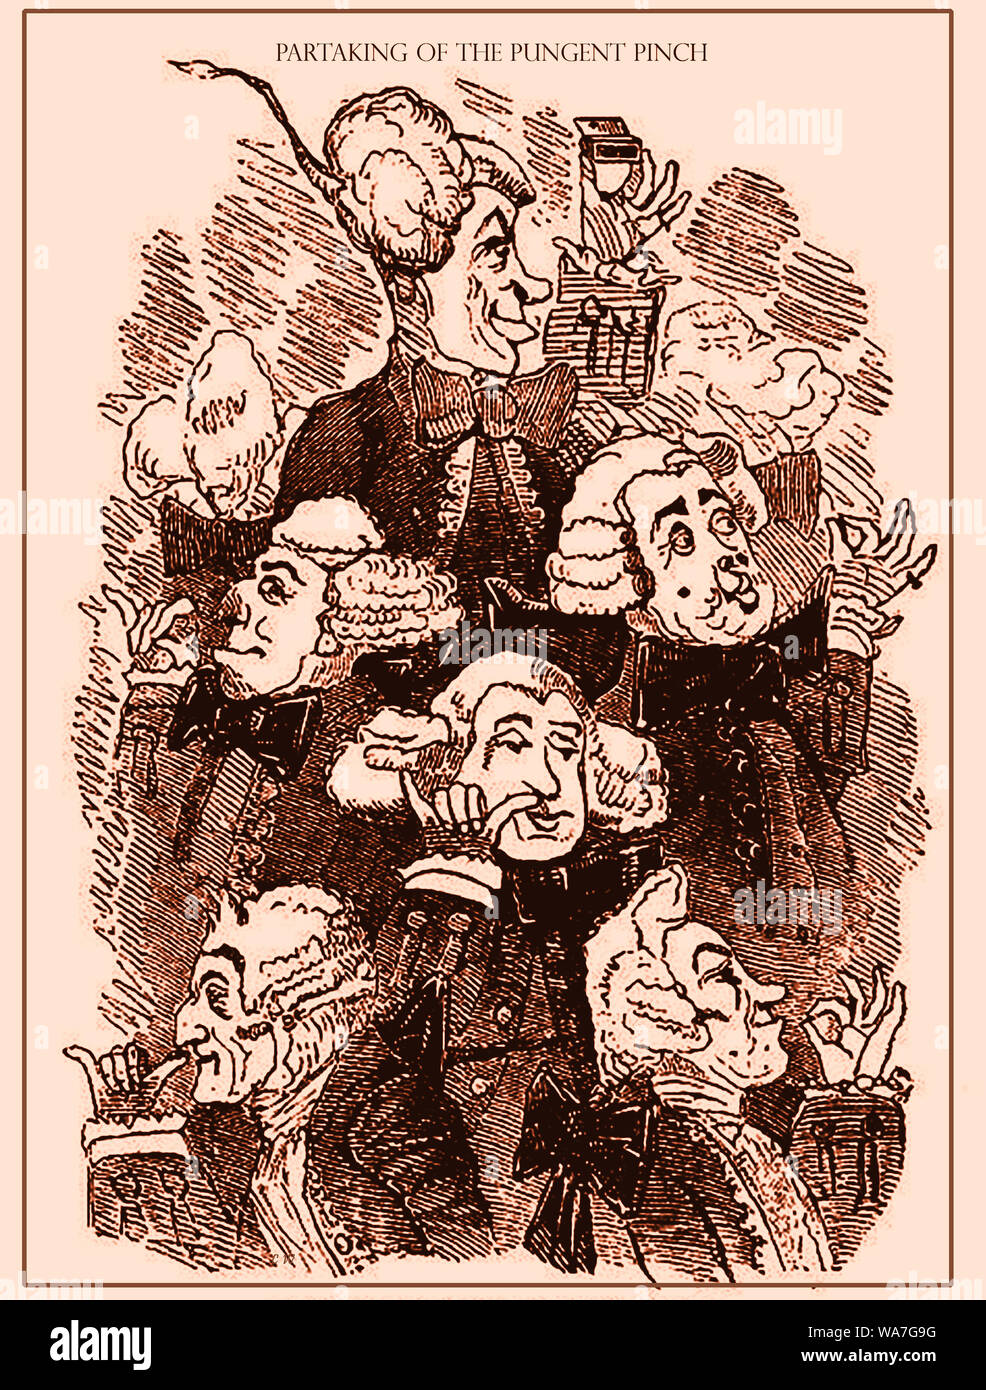 Una de las primeras burlas históricas caricatura mostrando inglés señores de las clases superiores de la sociedad alimentándose de rapé, el último día 'recreational social la droga" , un equivalente de la cocaína o el cannabis uso en la actualidad. Foto de stock